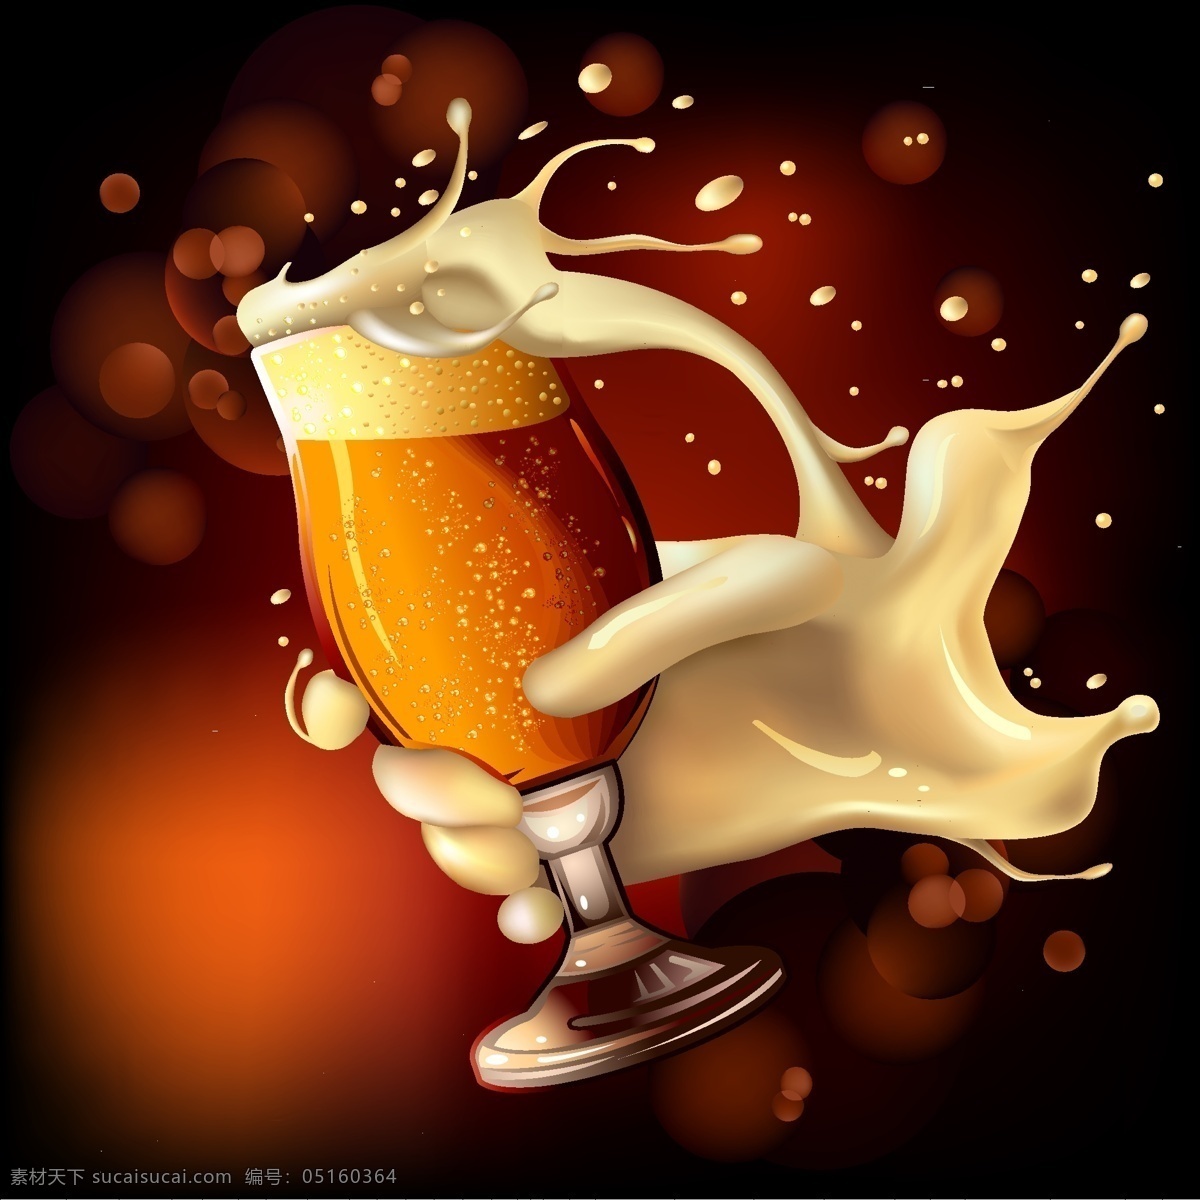 啤酒杯 飞溅的啤酒 手拿啤酒杯 啤酒 金色啤酒杯 矢量啤酒杯 一杯啤酒 飞溅啤酒 啤酒飞溅 餐饮美食 生活百科 矢量